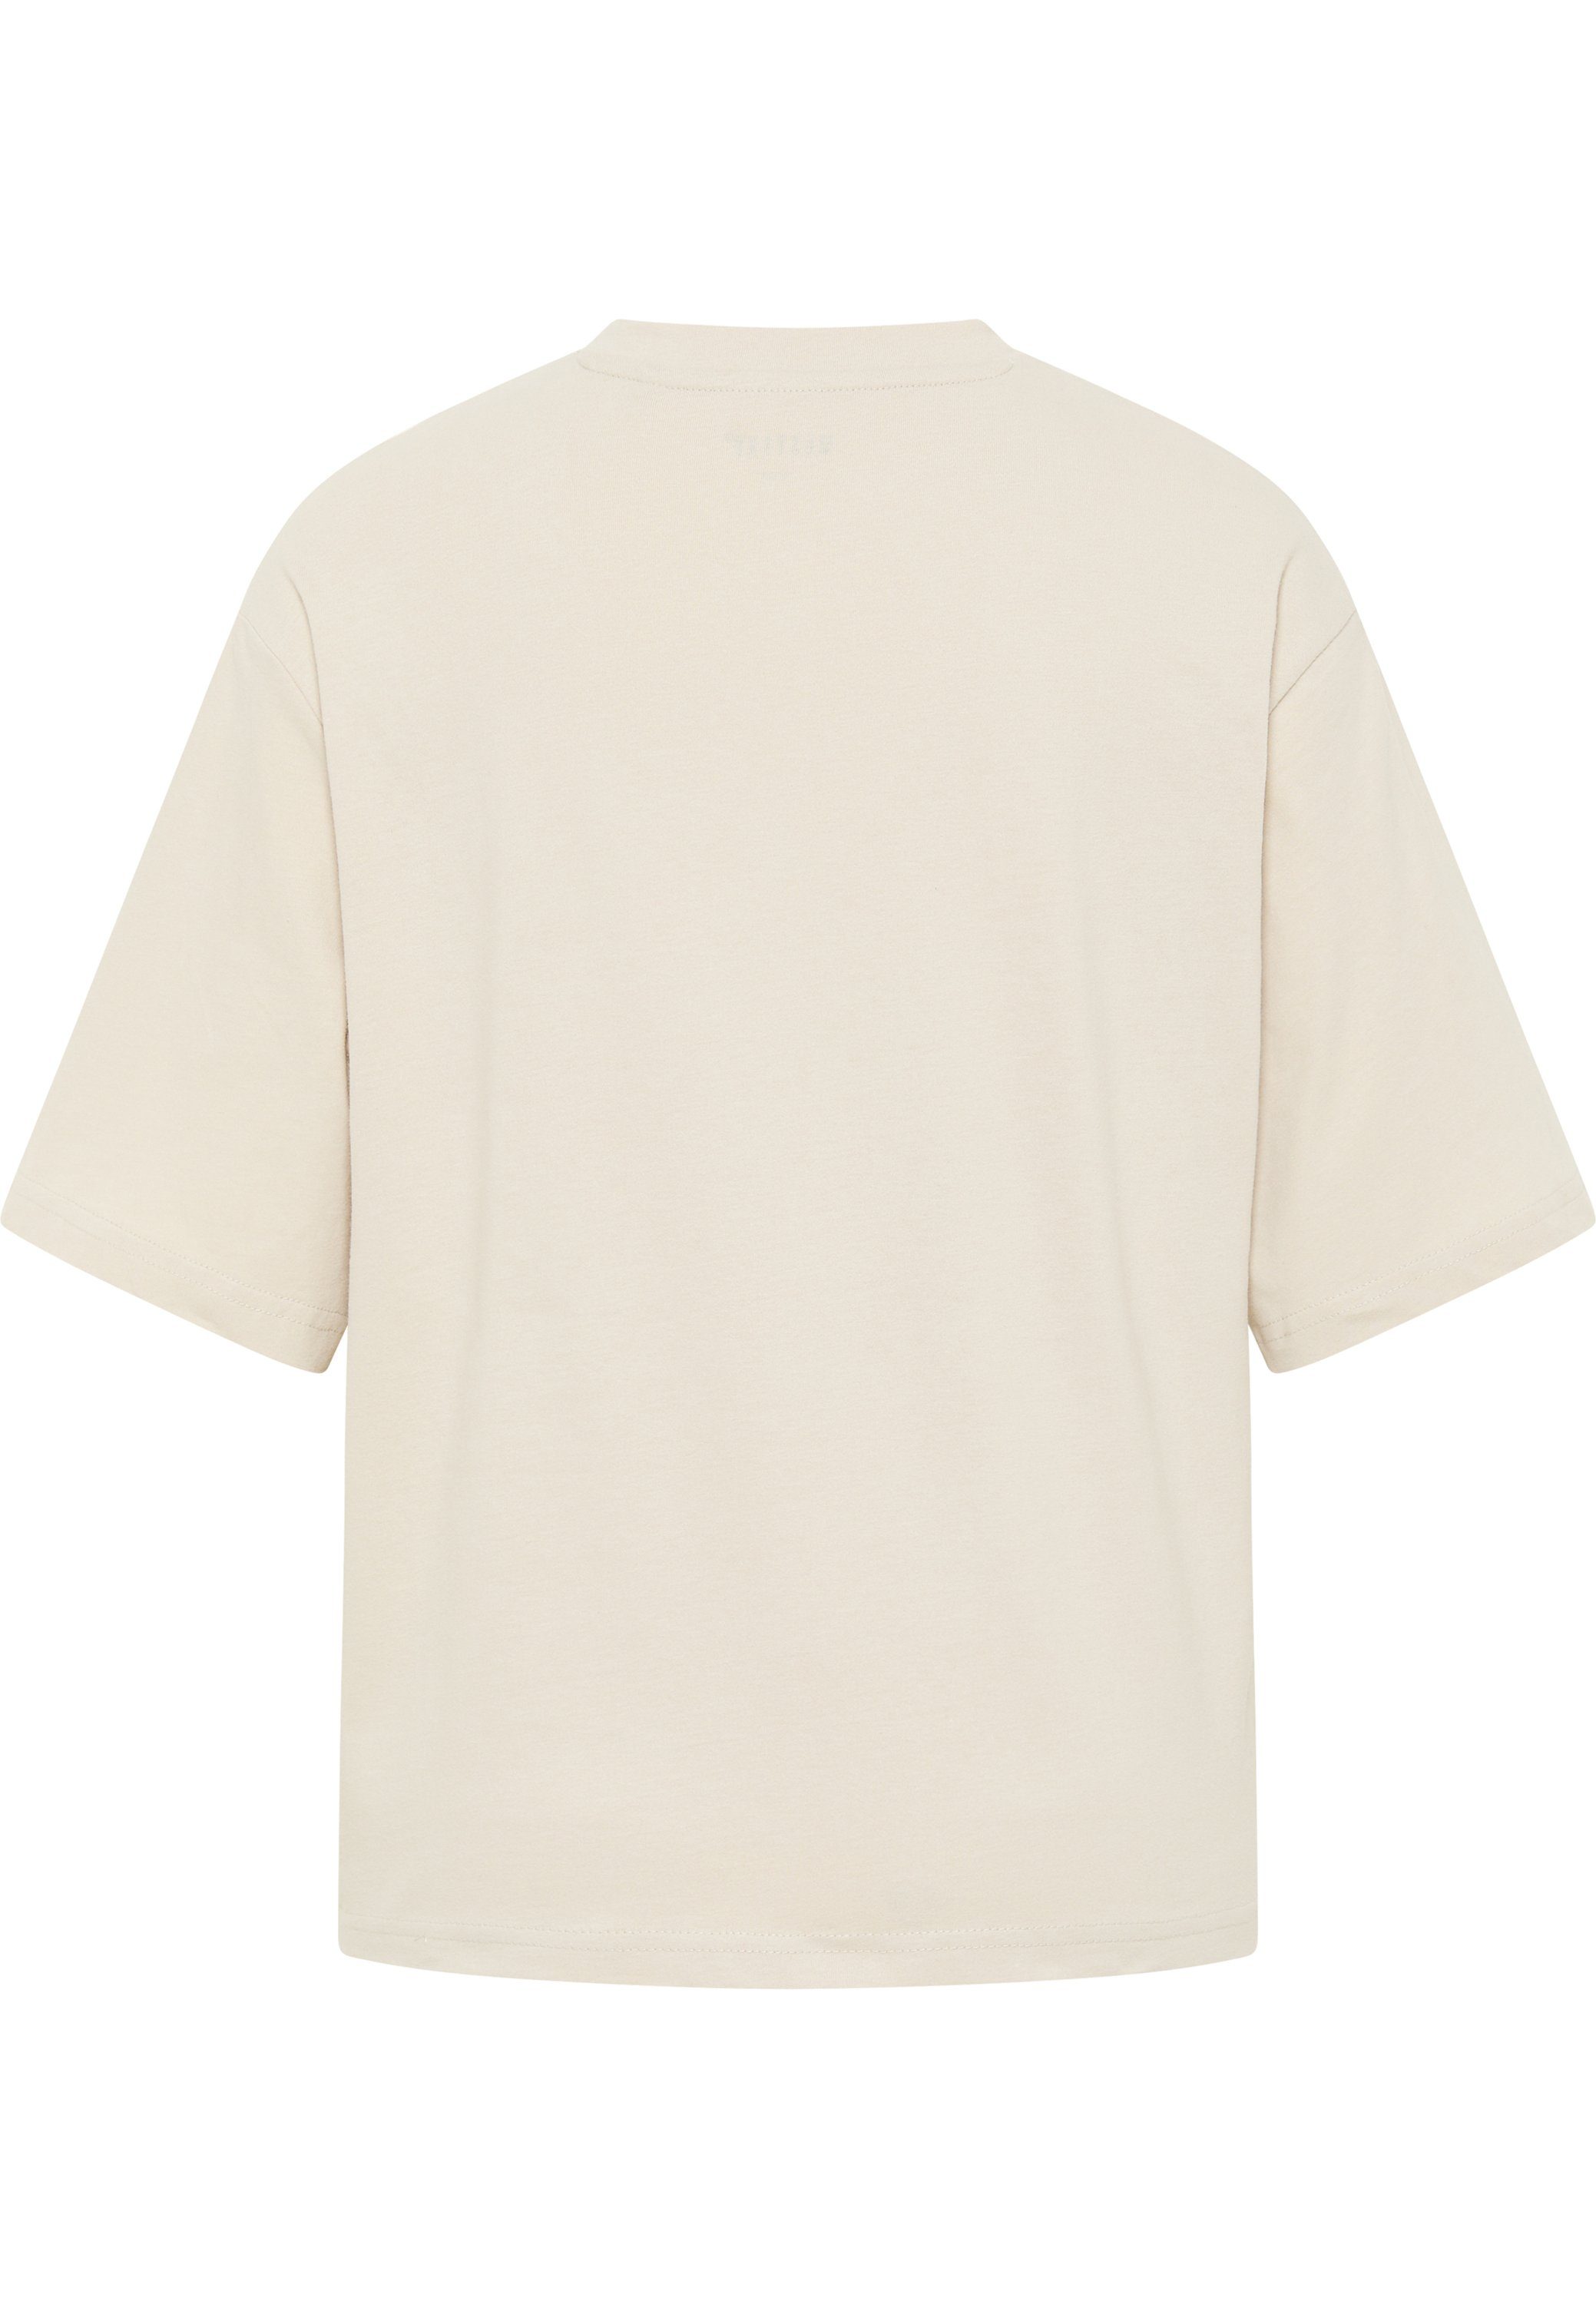 MUSTANG Kurzarmshirt T-Shirt Mustang T-Shirt beige